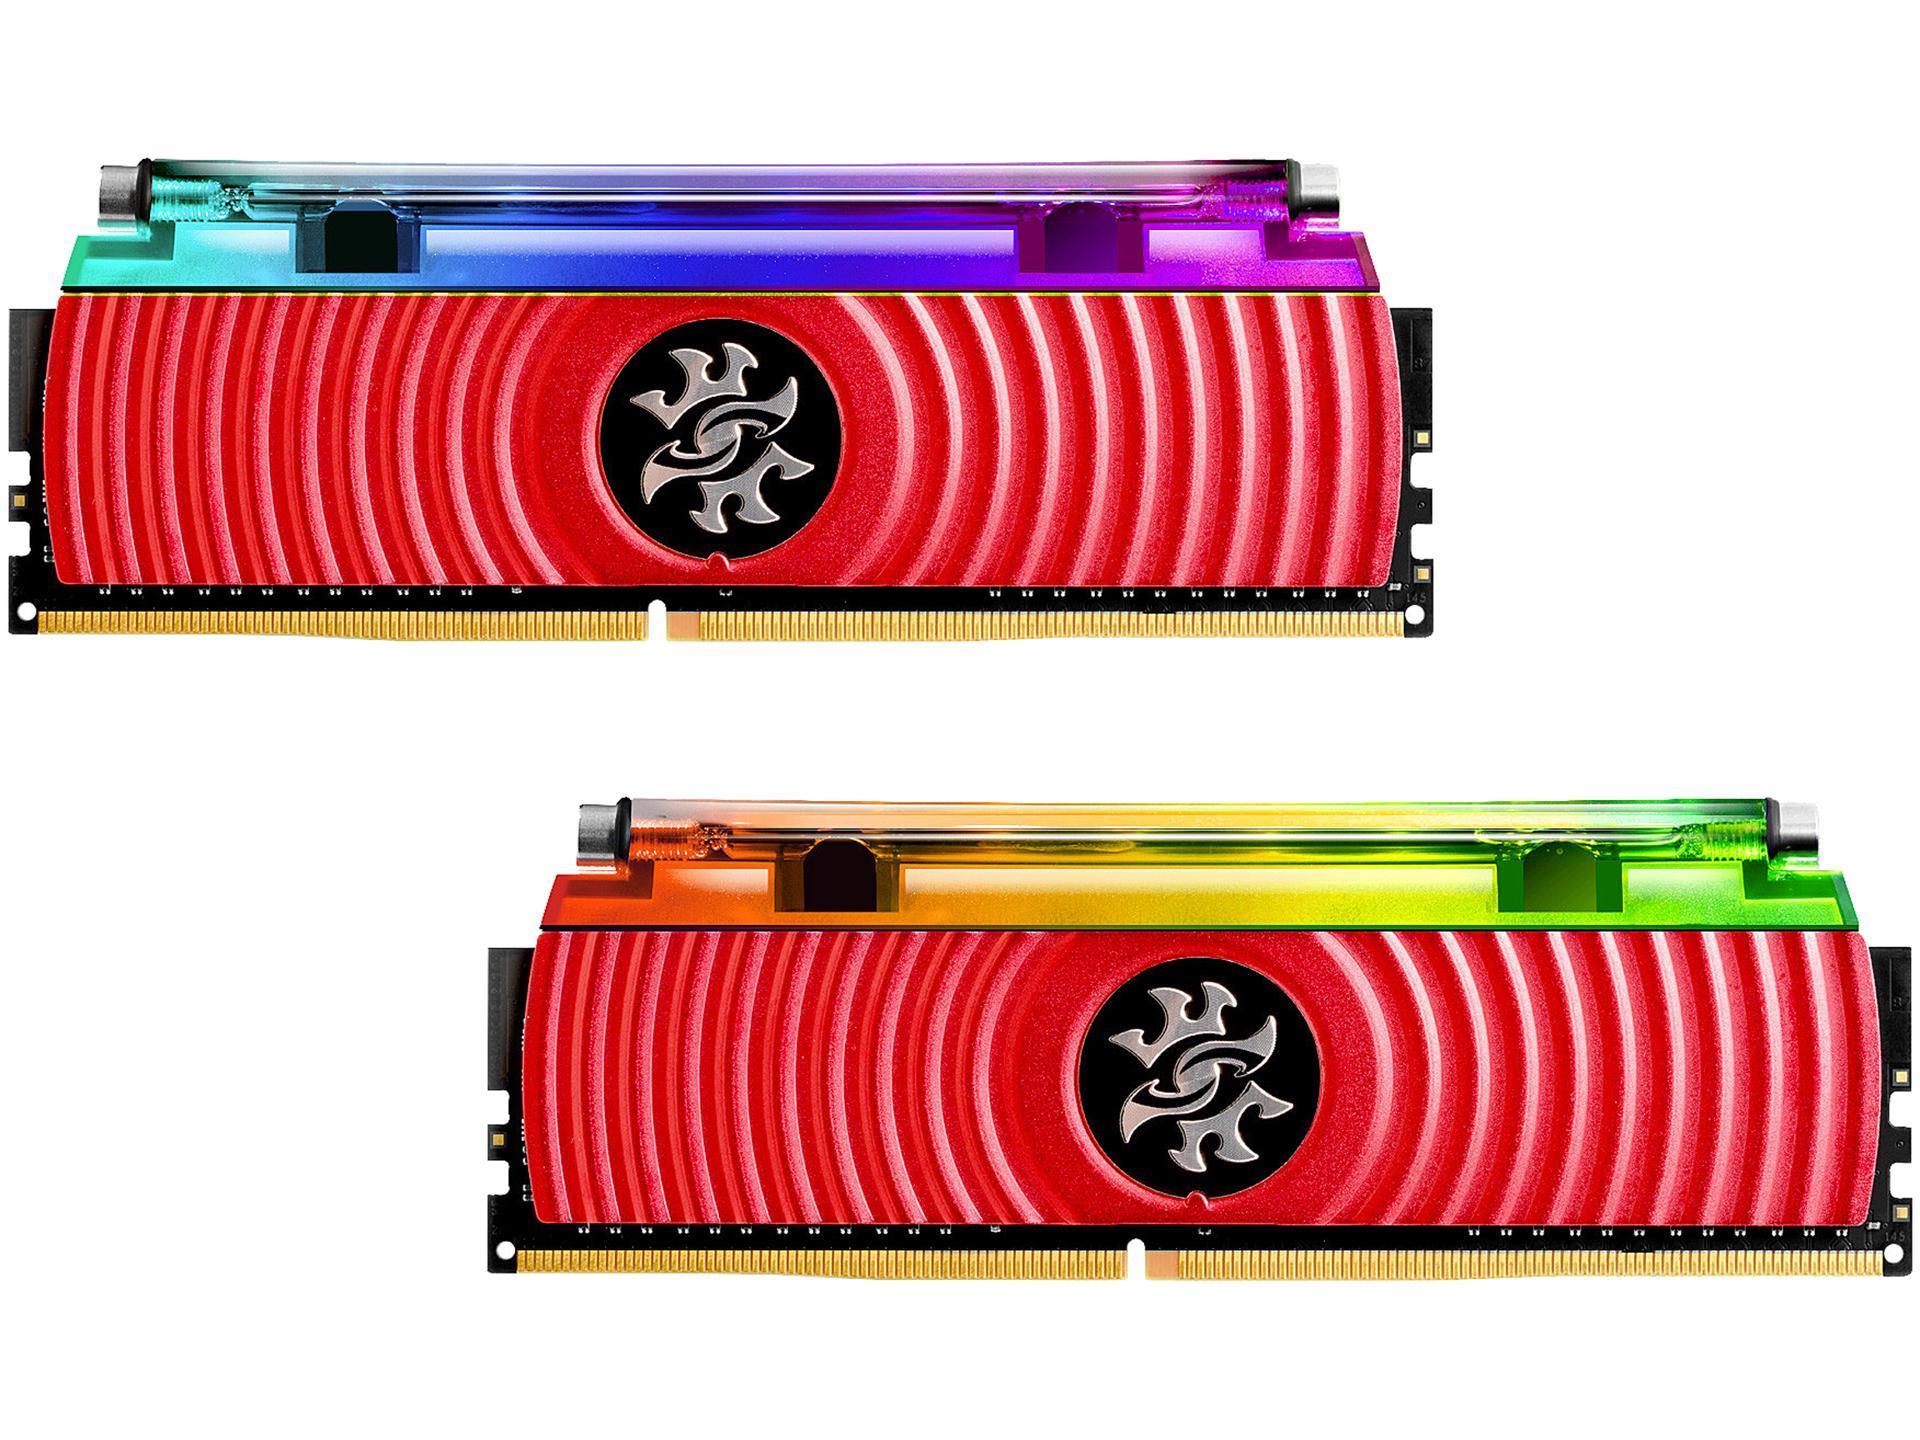 RAM ADATA XPG SPECTRIX D80 16GB (2x8) DDR4-3000 CL16 (AX4U300038G16-DR80) slide image 0